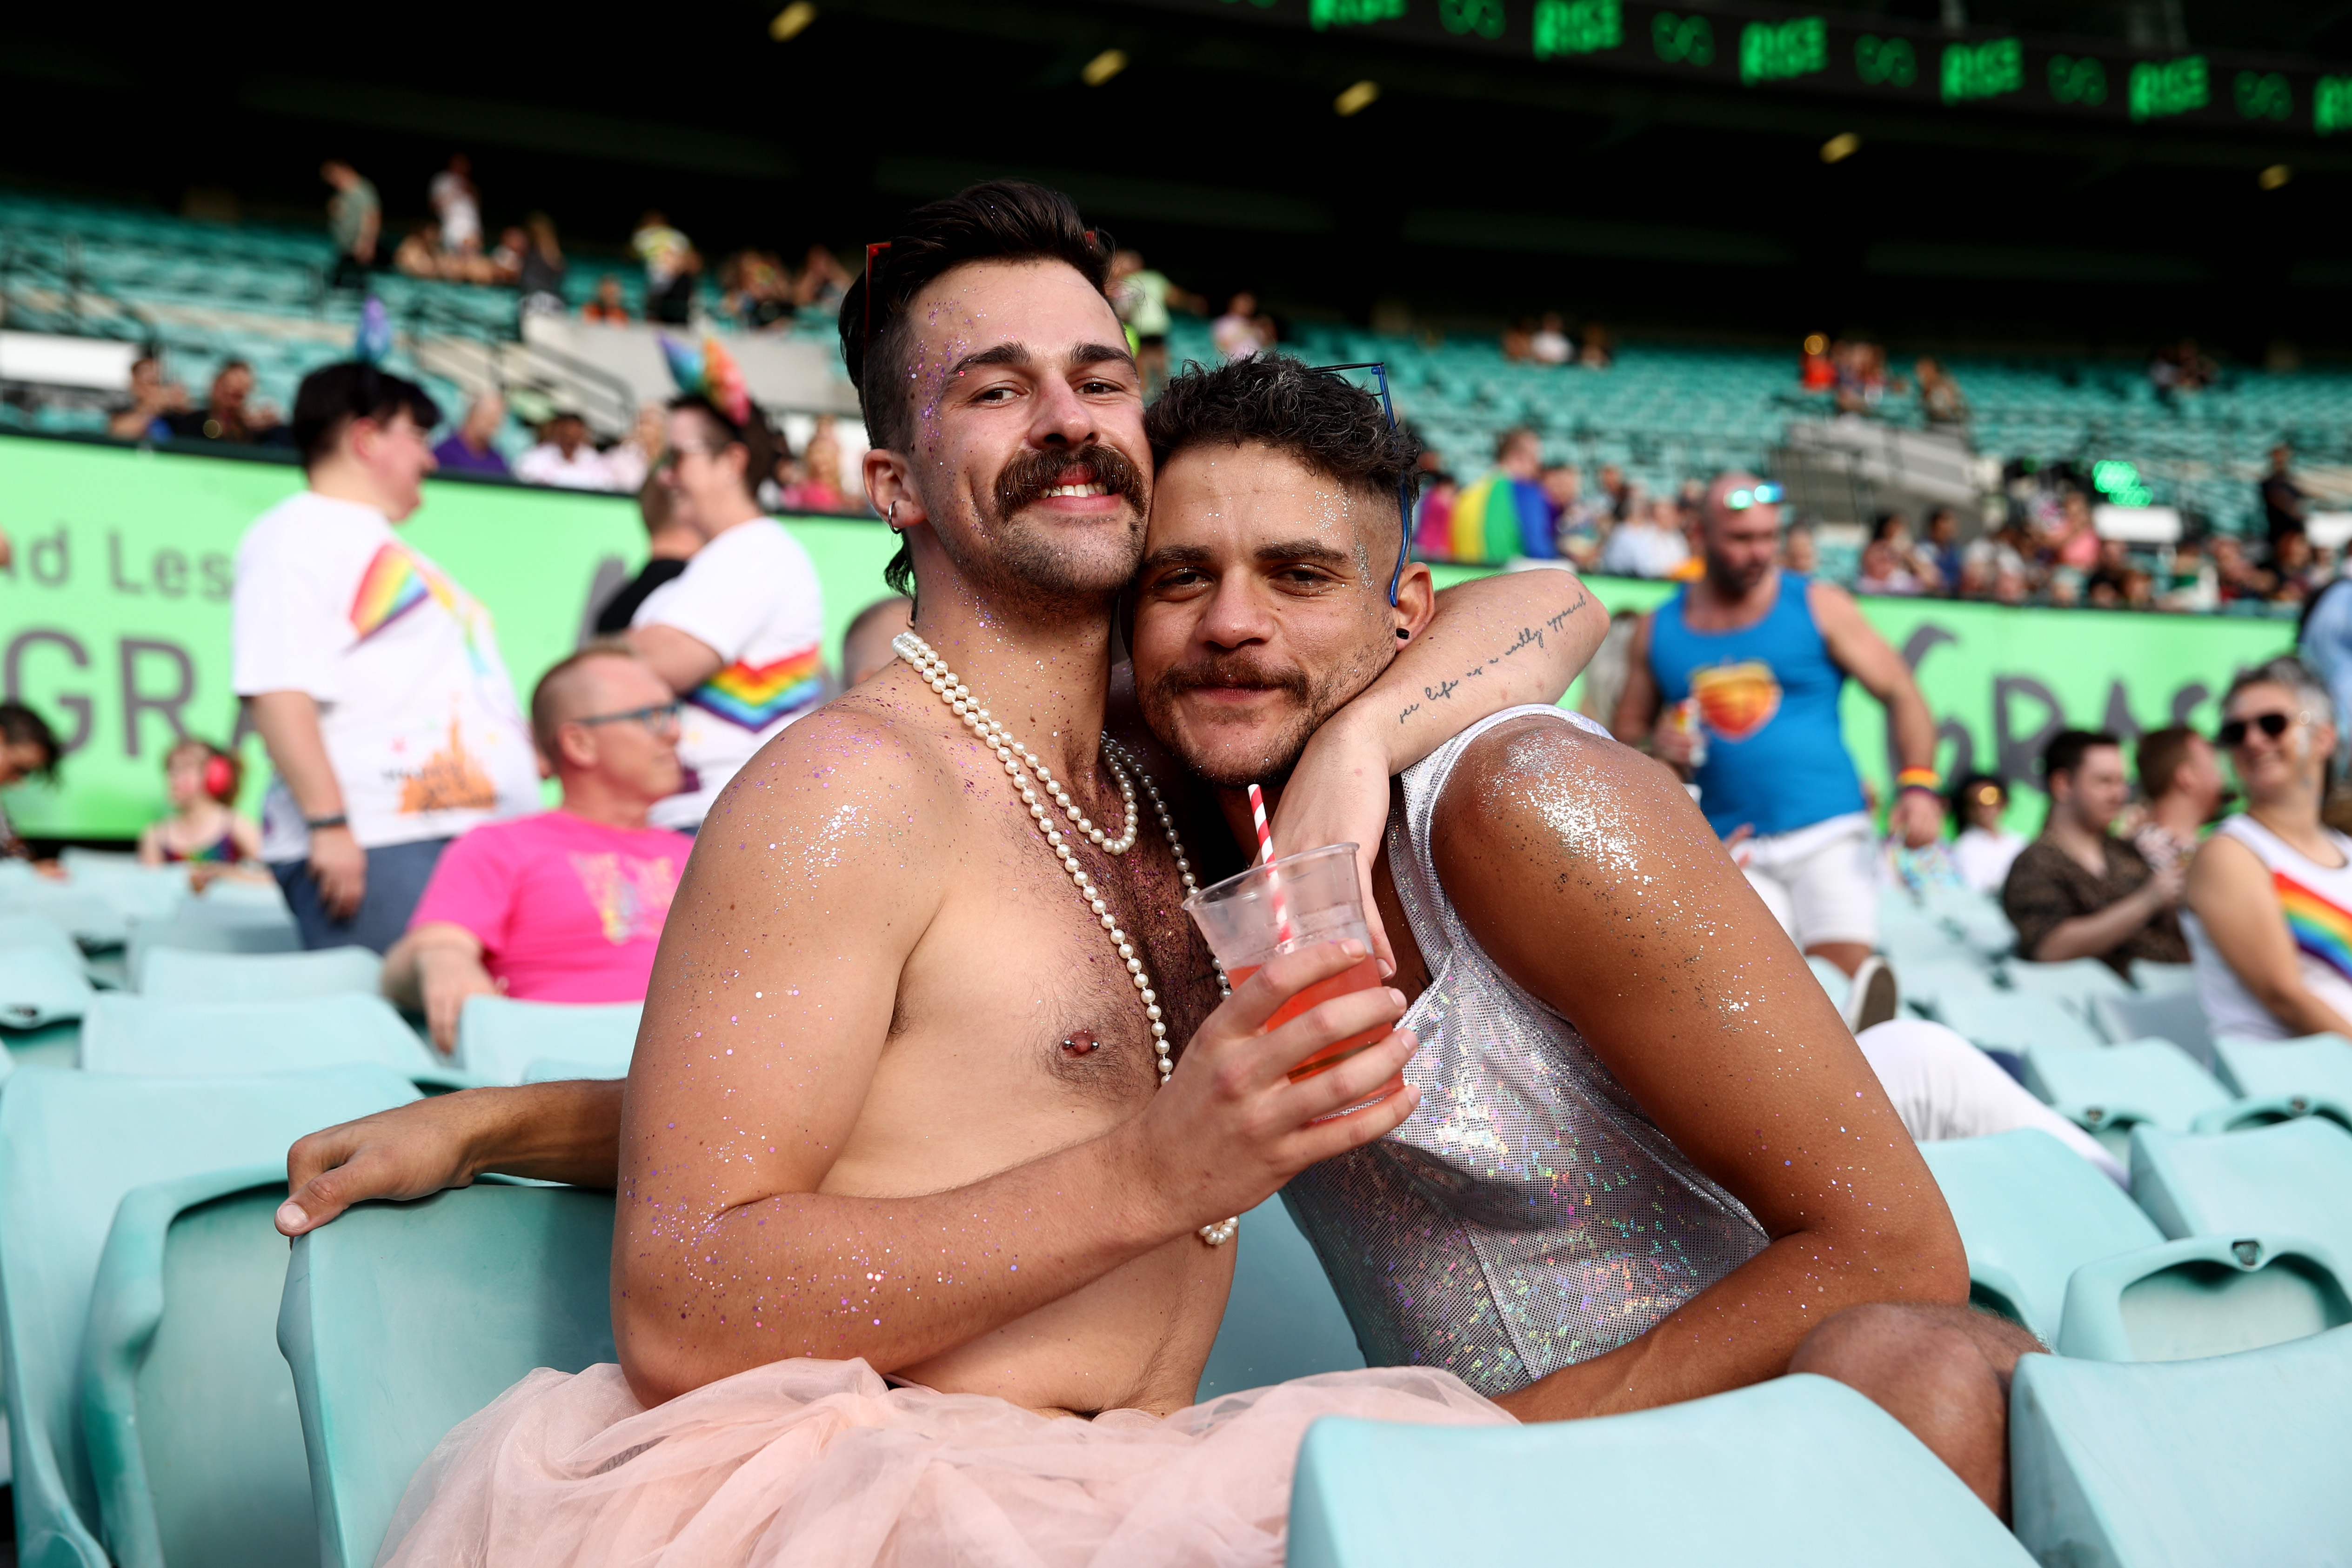 australia mardi gras couple in stadium